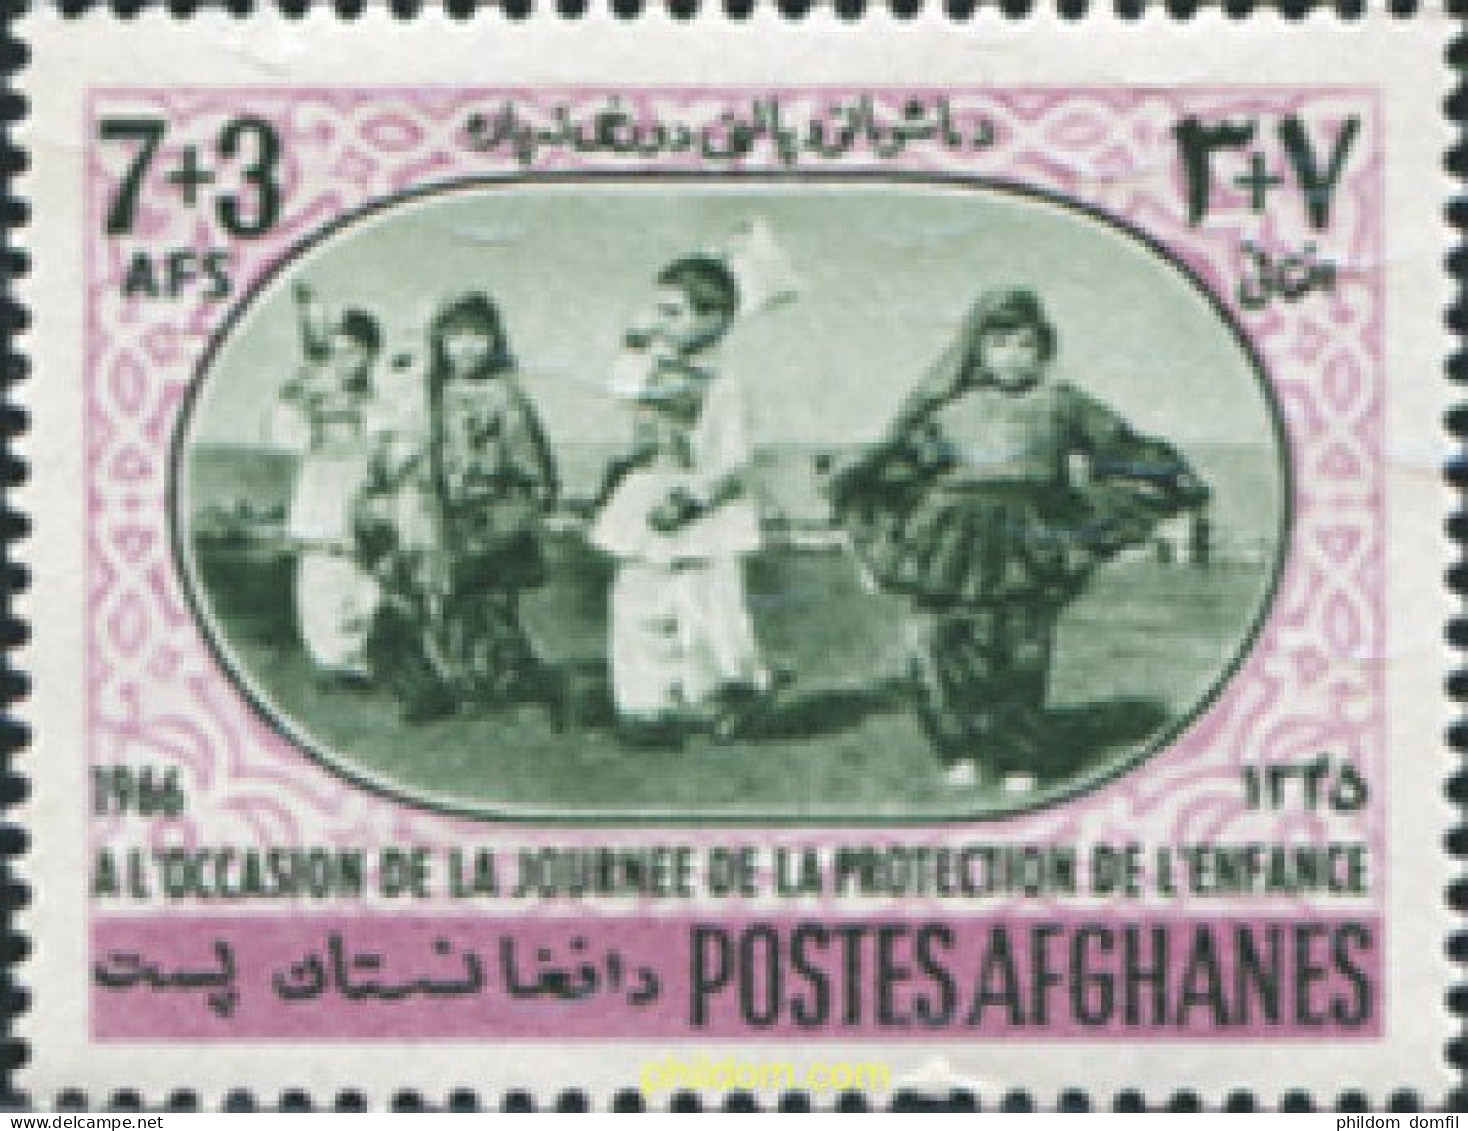 679117 MNH AFGANISTAN 1966 PROTECCION DE LA INFANCIA - Afganistán